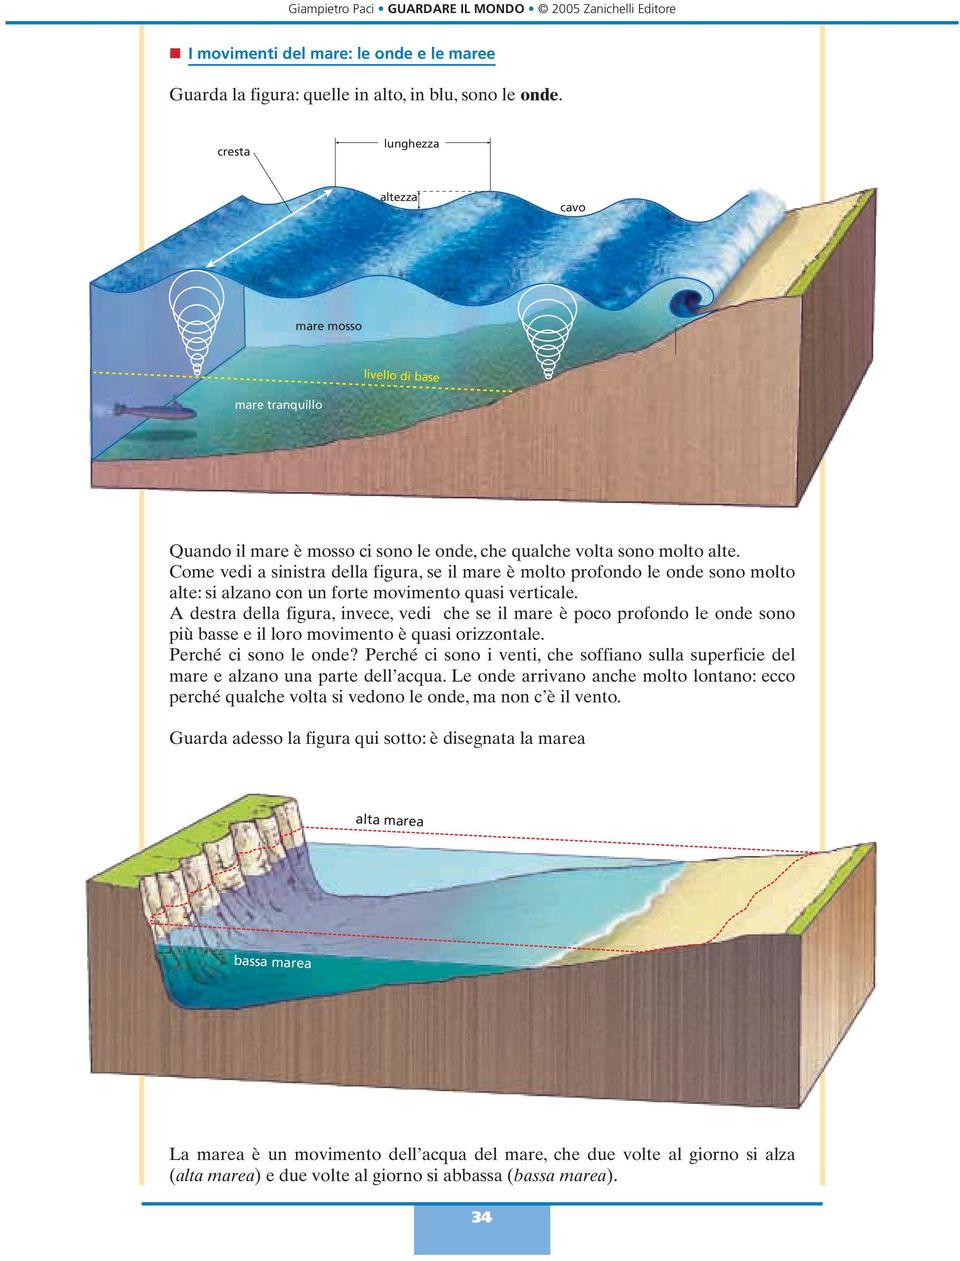 Come vedi a sinistra della figura, se il mare è molto profondo le onde sono molto alte: si alzano con un forte movimento quasi verticale.